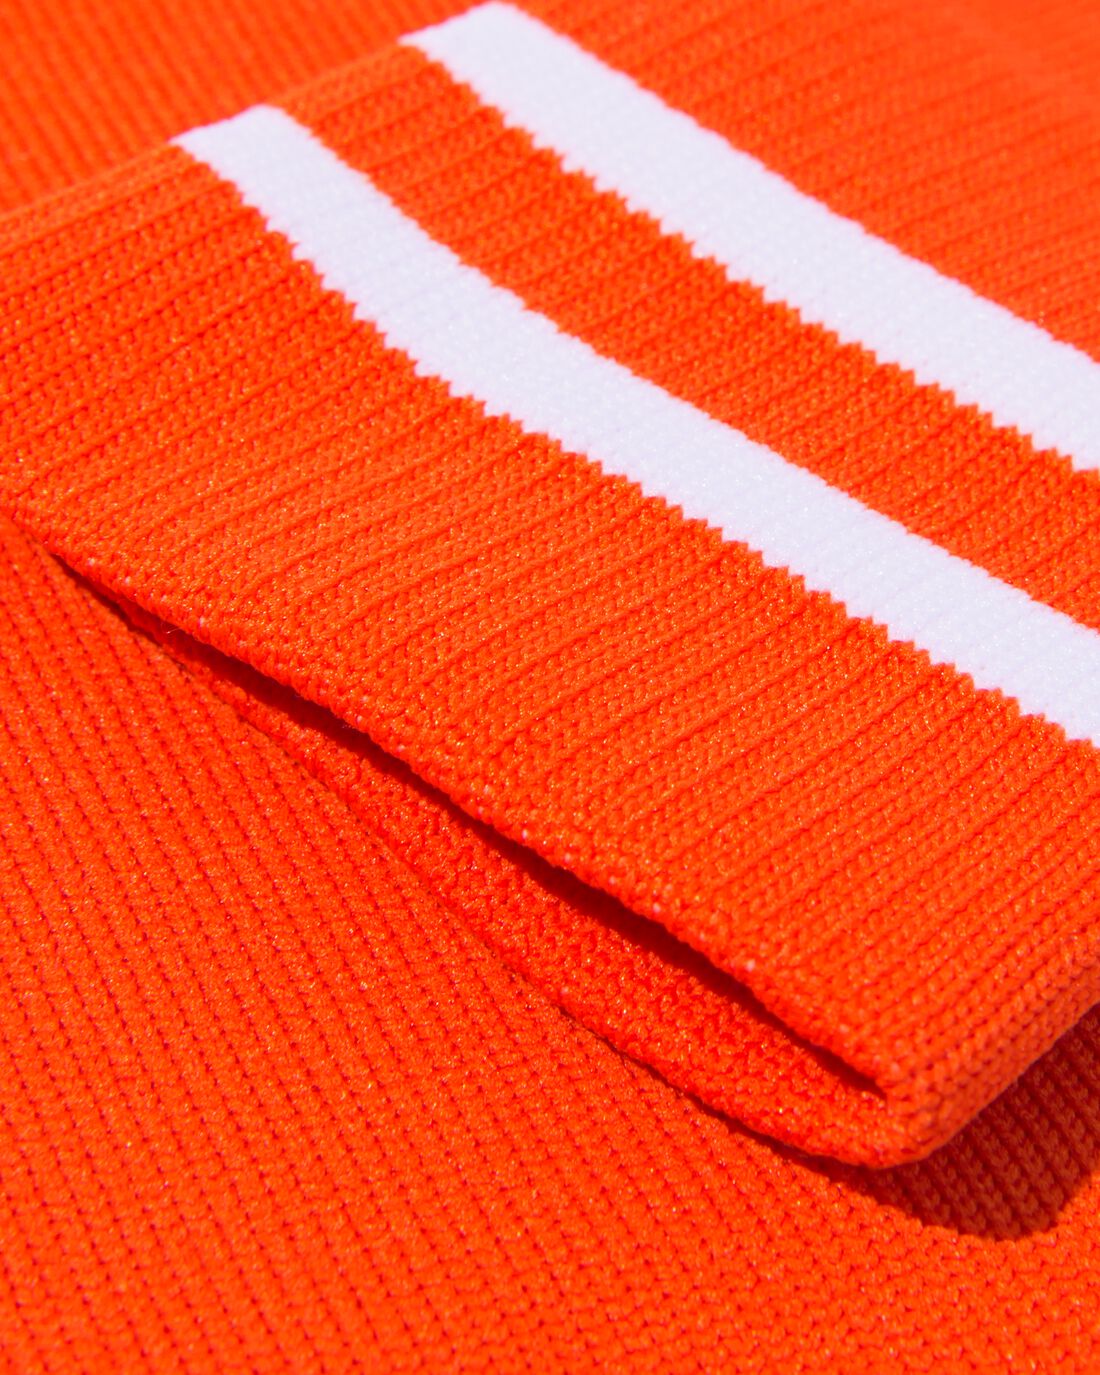 HEMA Kinder Sportkniekousen Nederland Oranje (oranje)